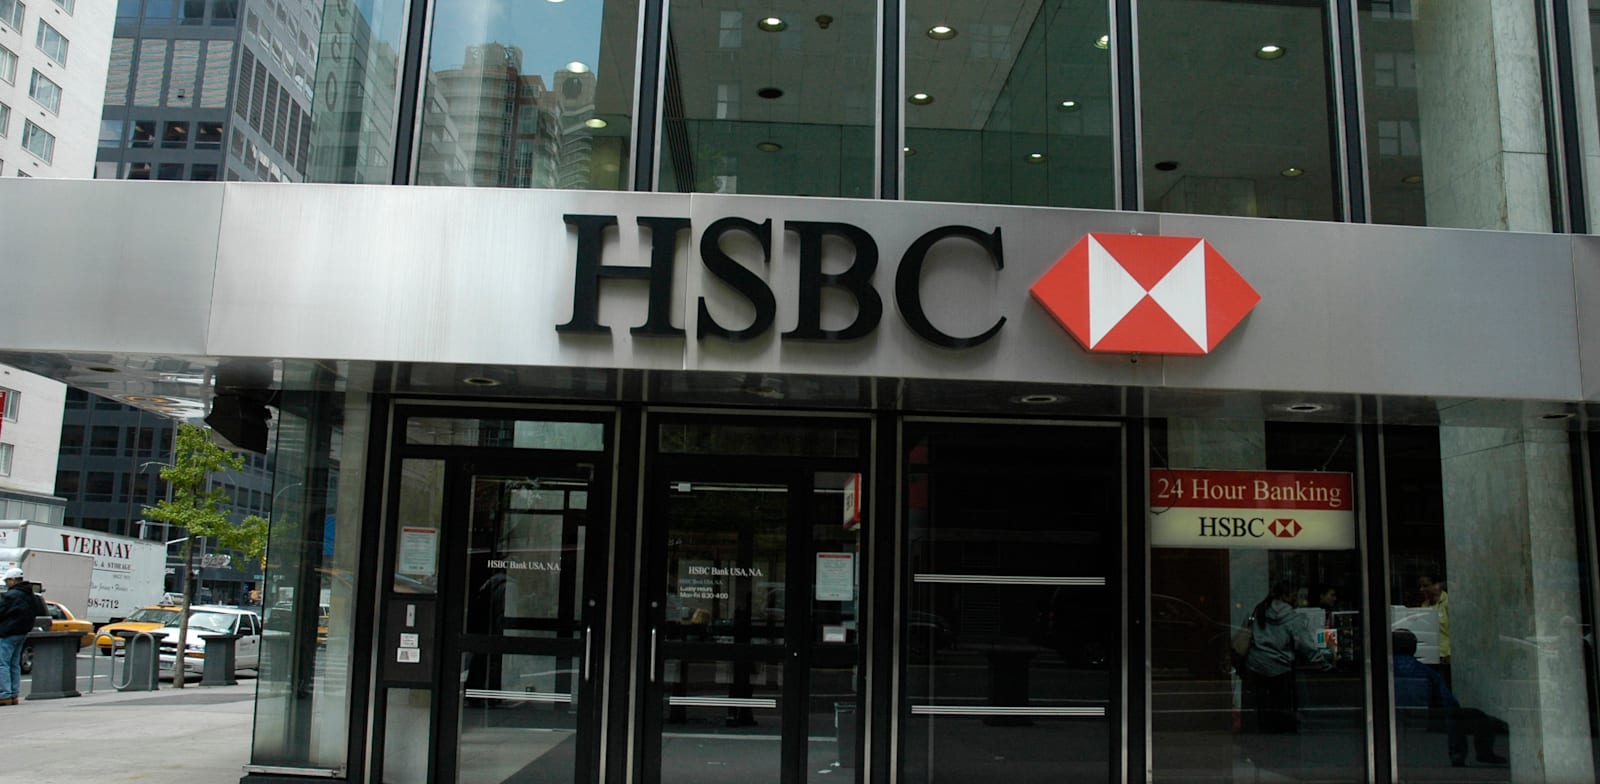 בנק HSBC בניו יורק / צילום: תמר מצפי